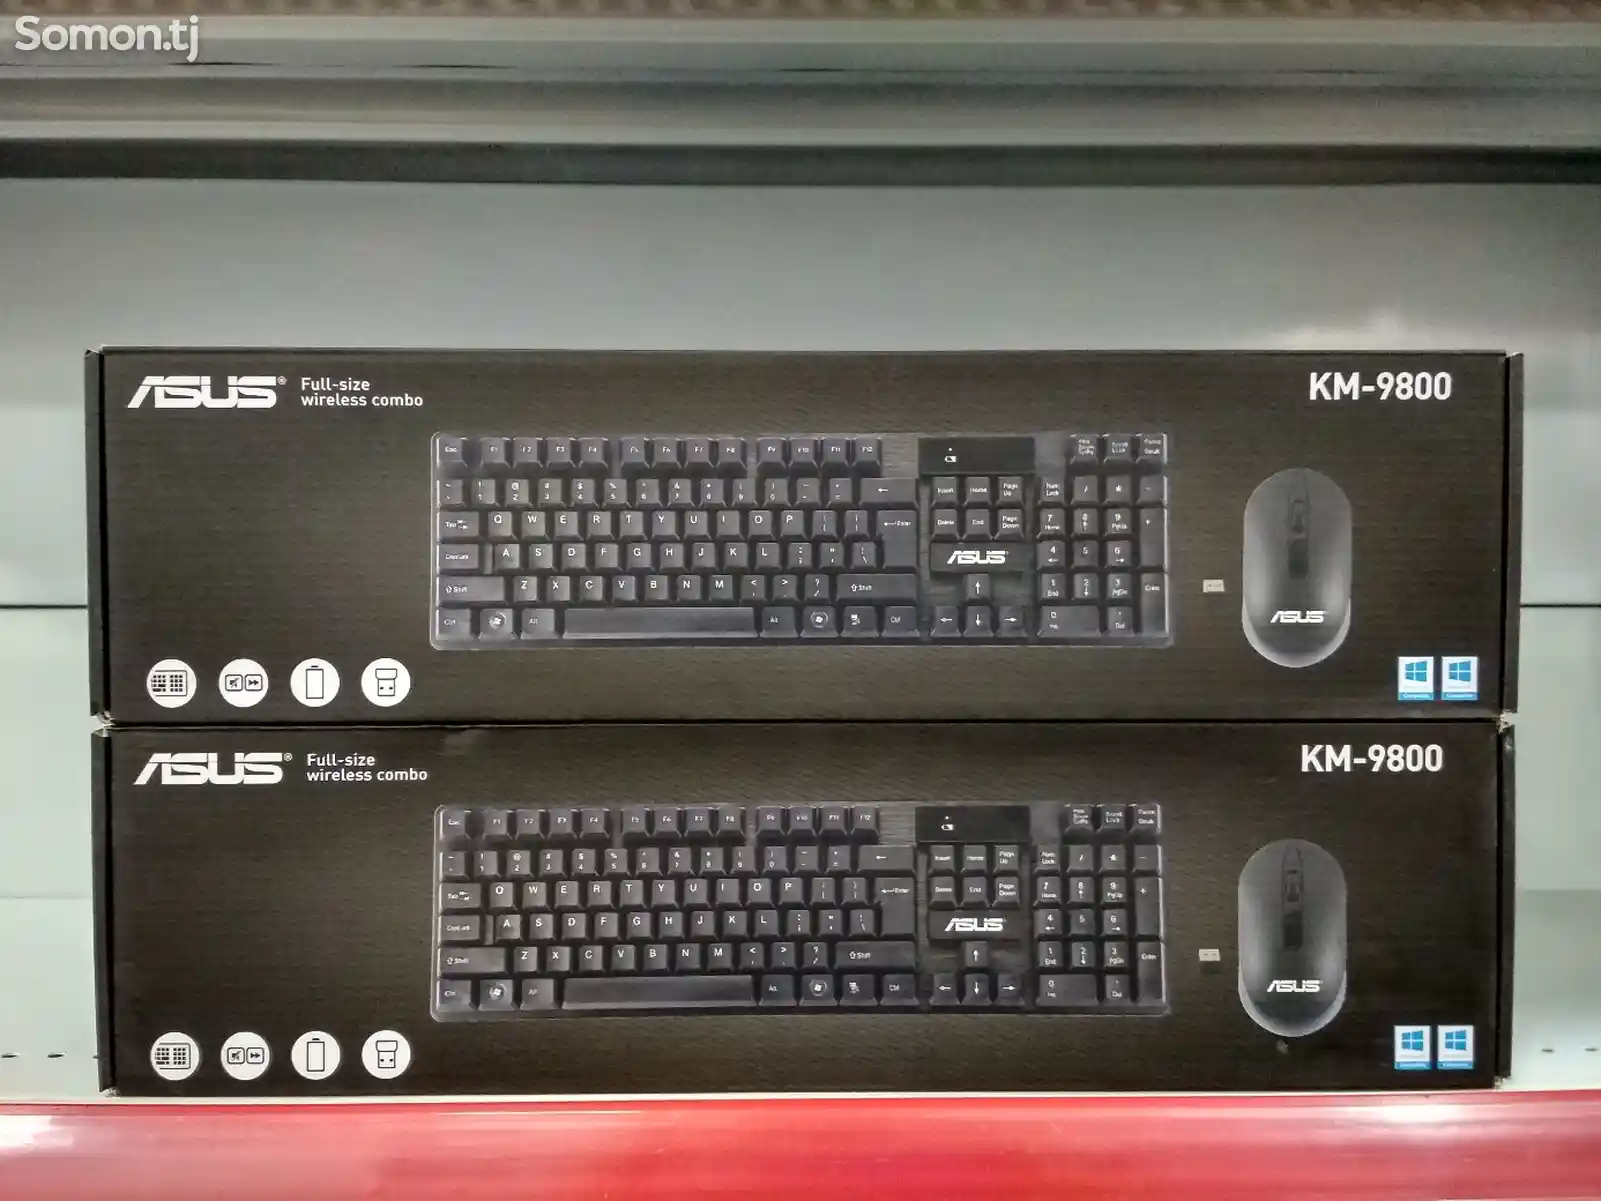 Беспроводная клавиатура и мышка Asus Km-9800-1